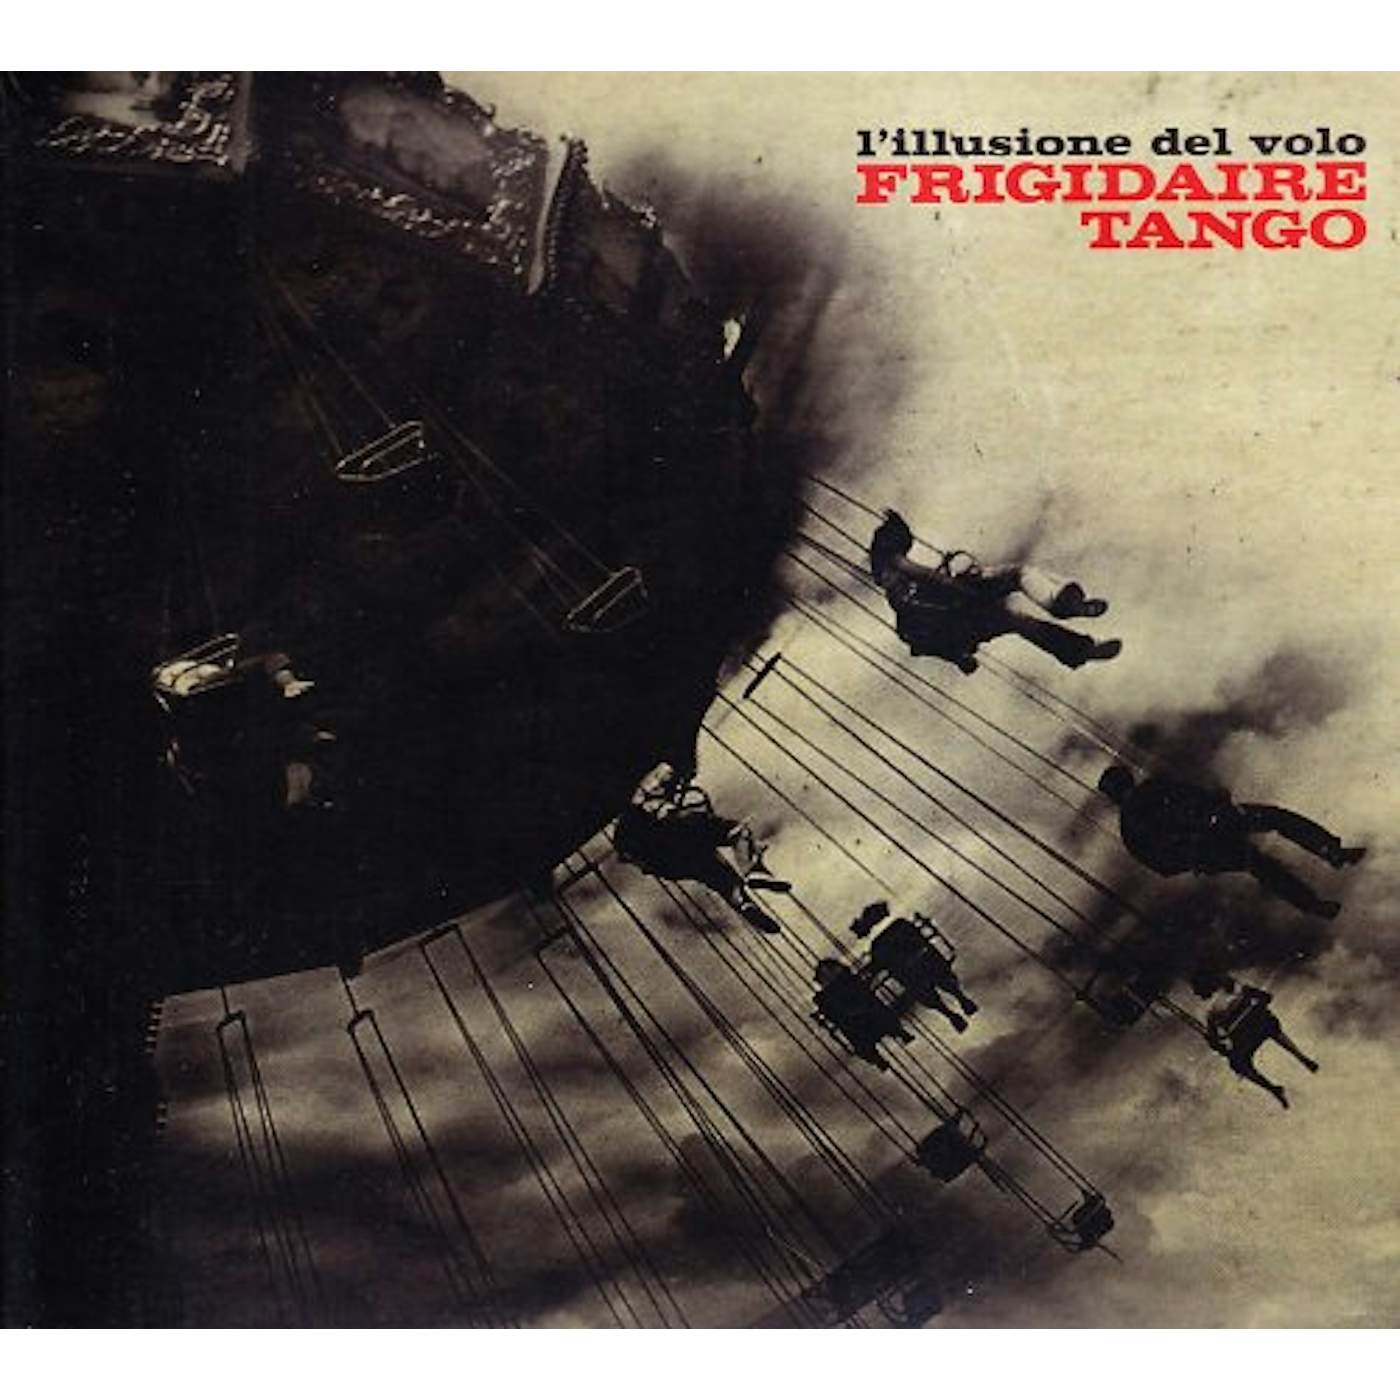 Frigidaire Tango L'ILLUSIONE DEL VOLO CD